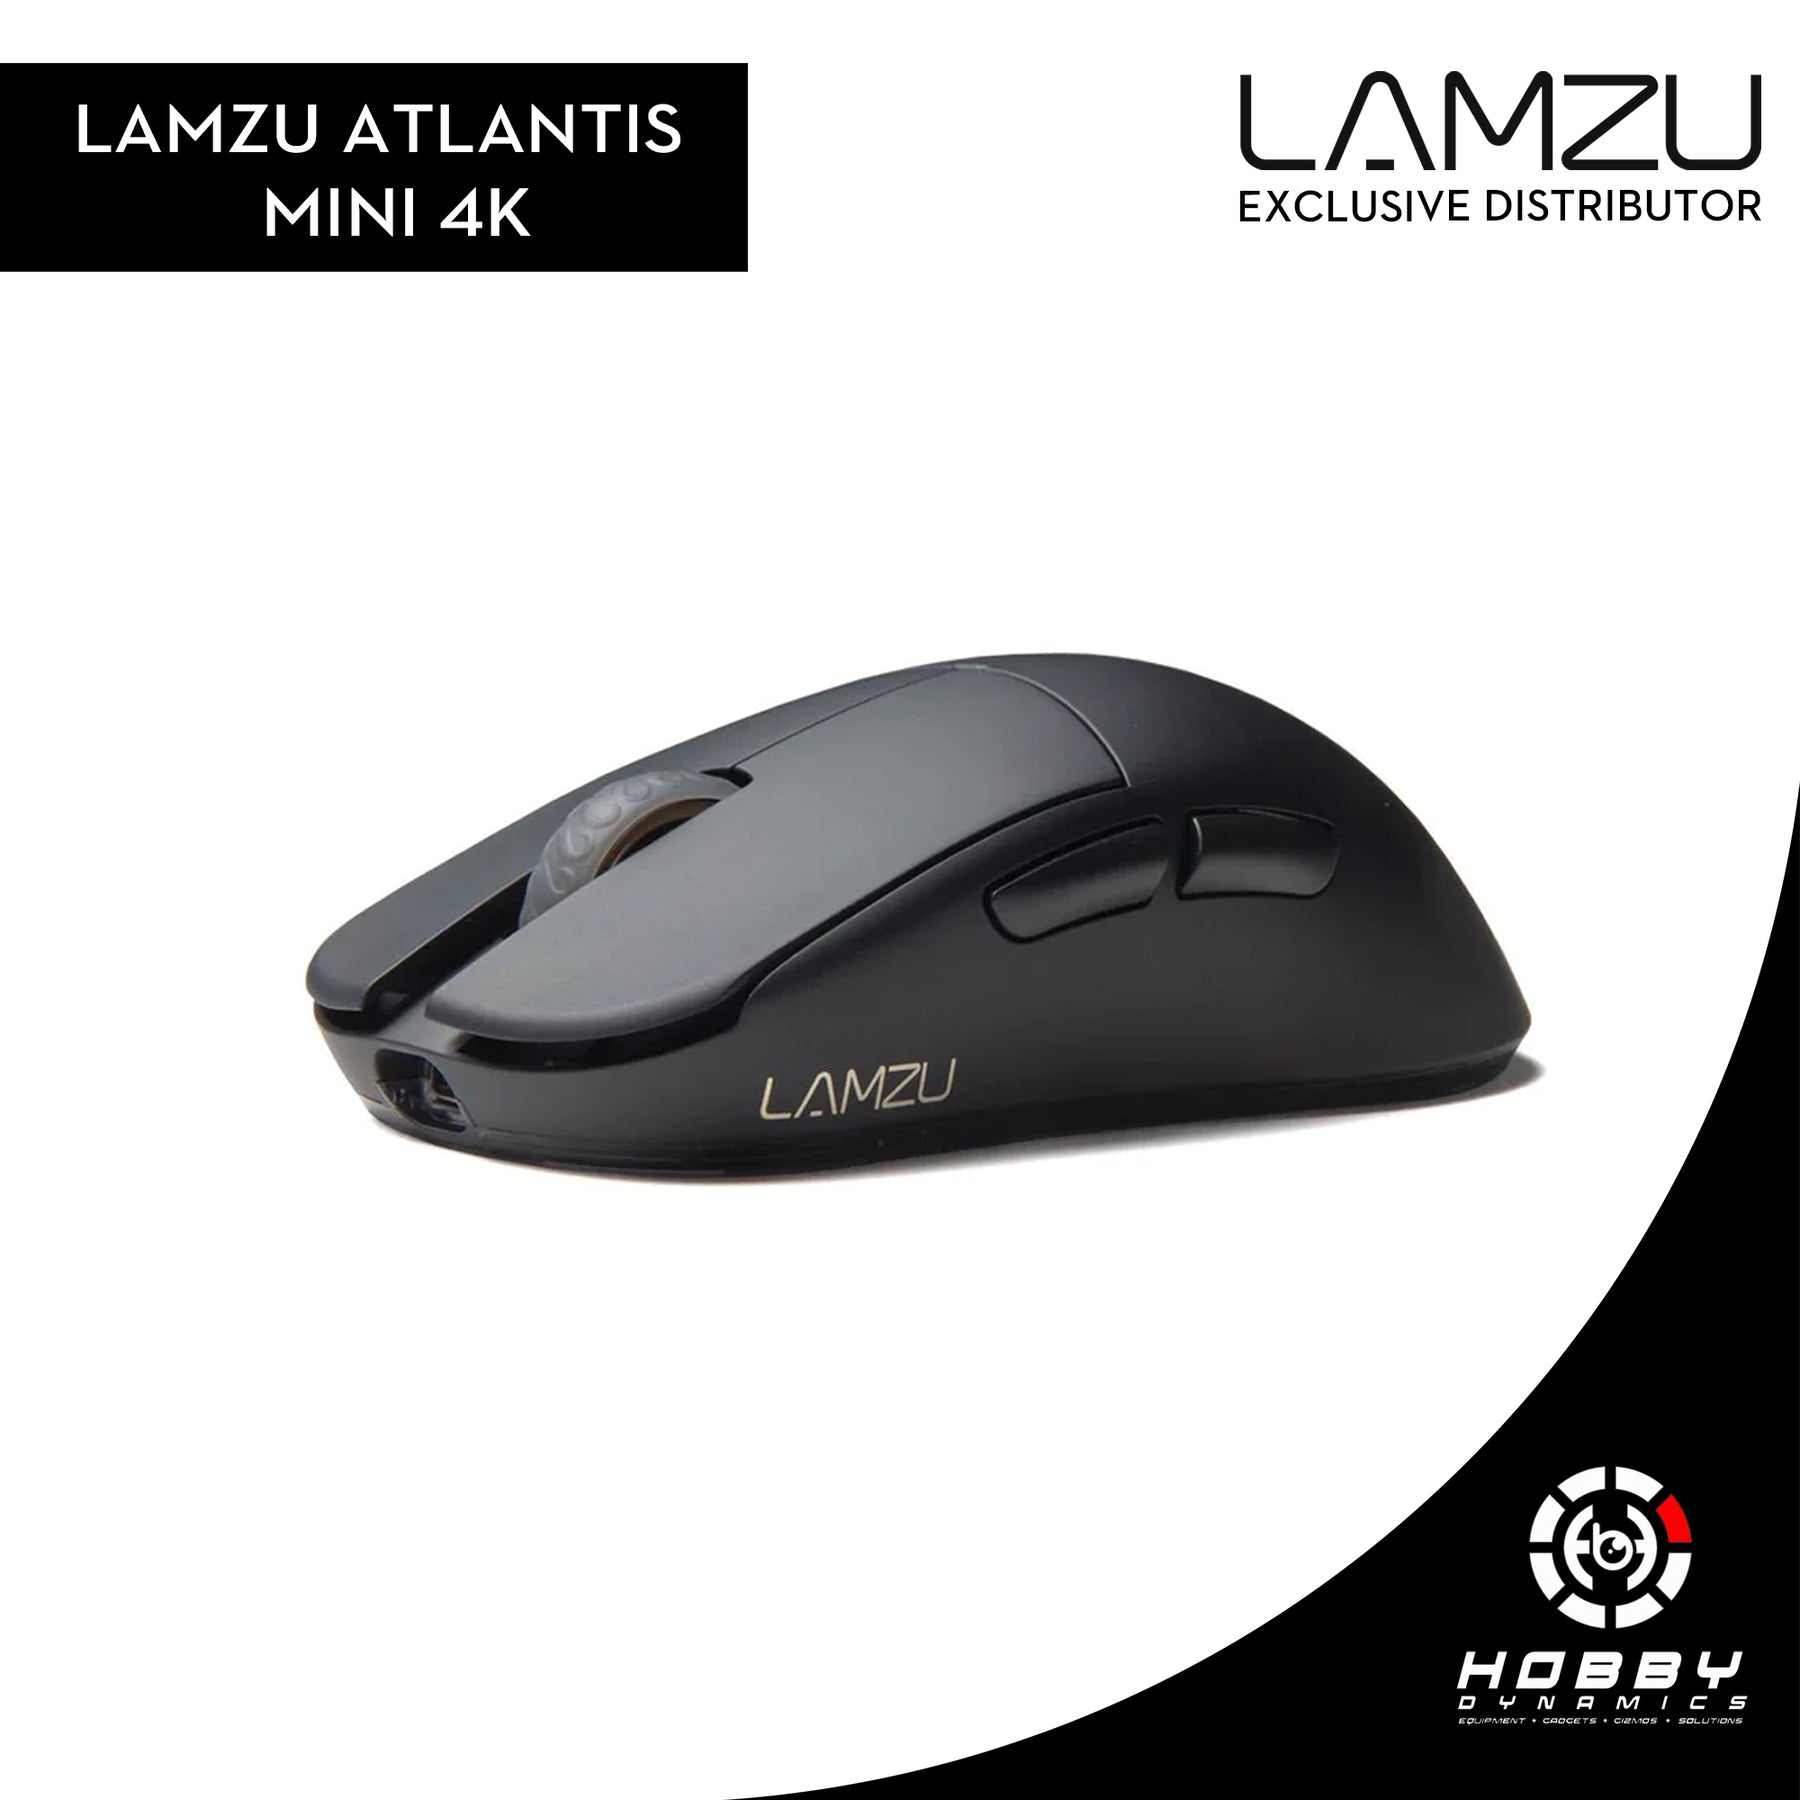 LAMZU Atlantis Mini 4K Review 